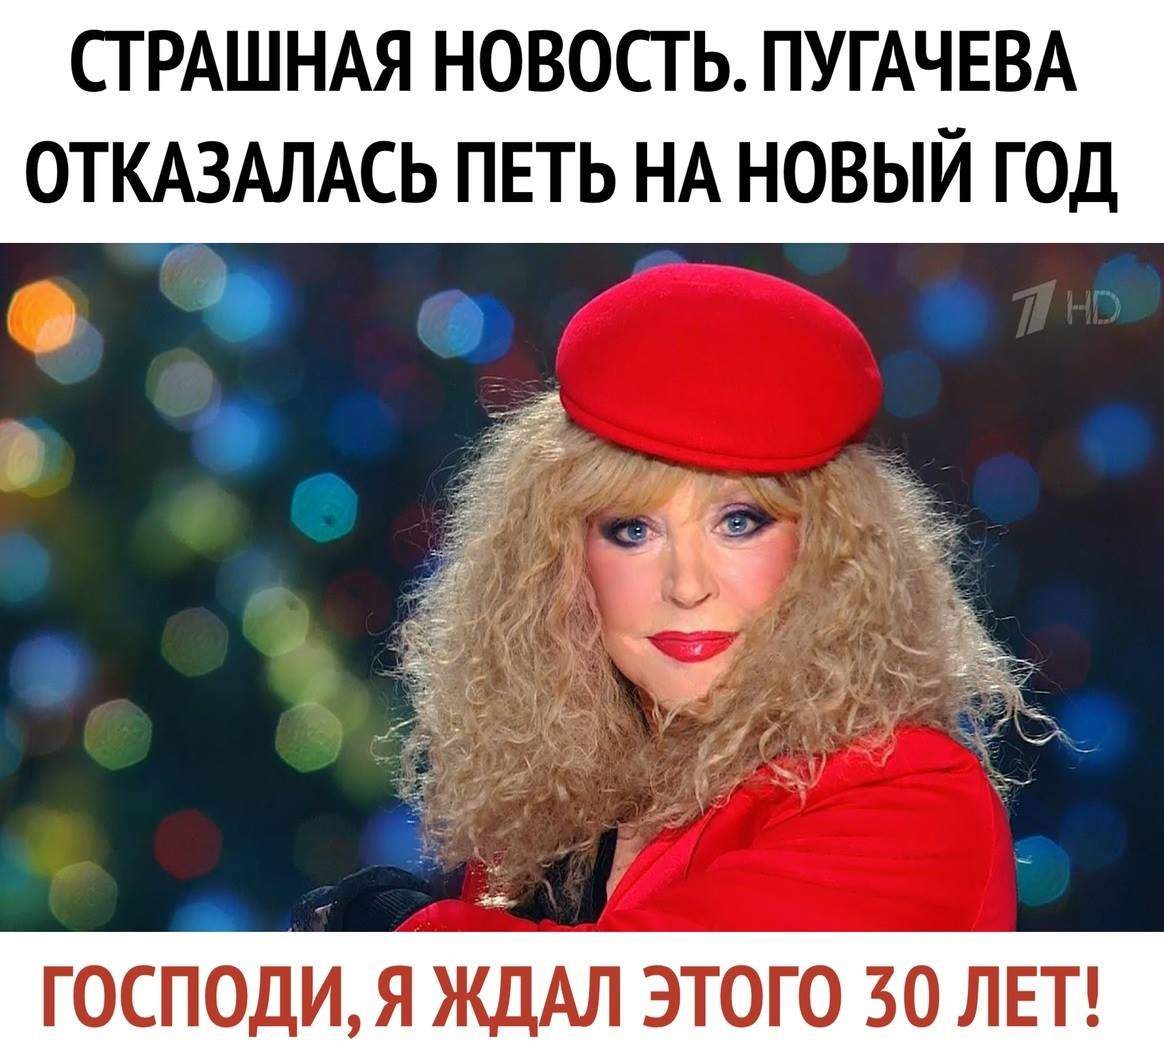 Новая песня пугачевой новый год. Голубой огонек Пугачева в Красном костюме. Пугачева на огоньке в Красном костюме.